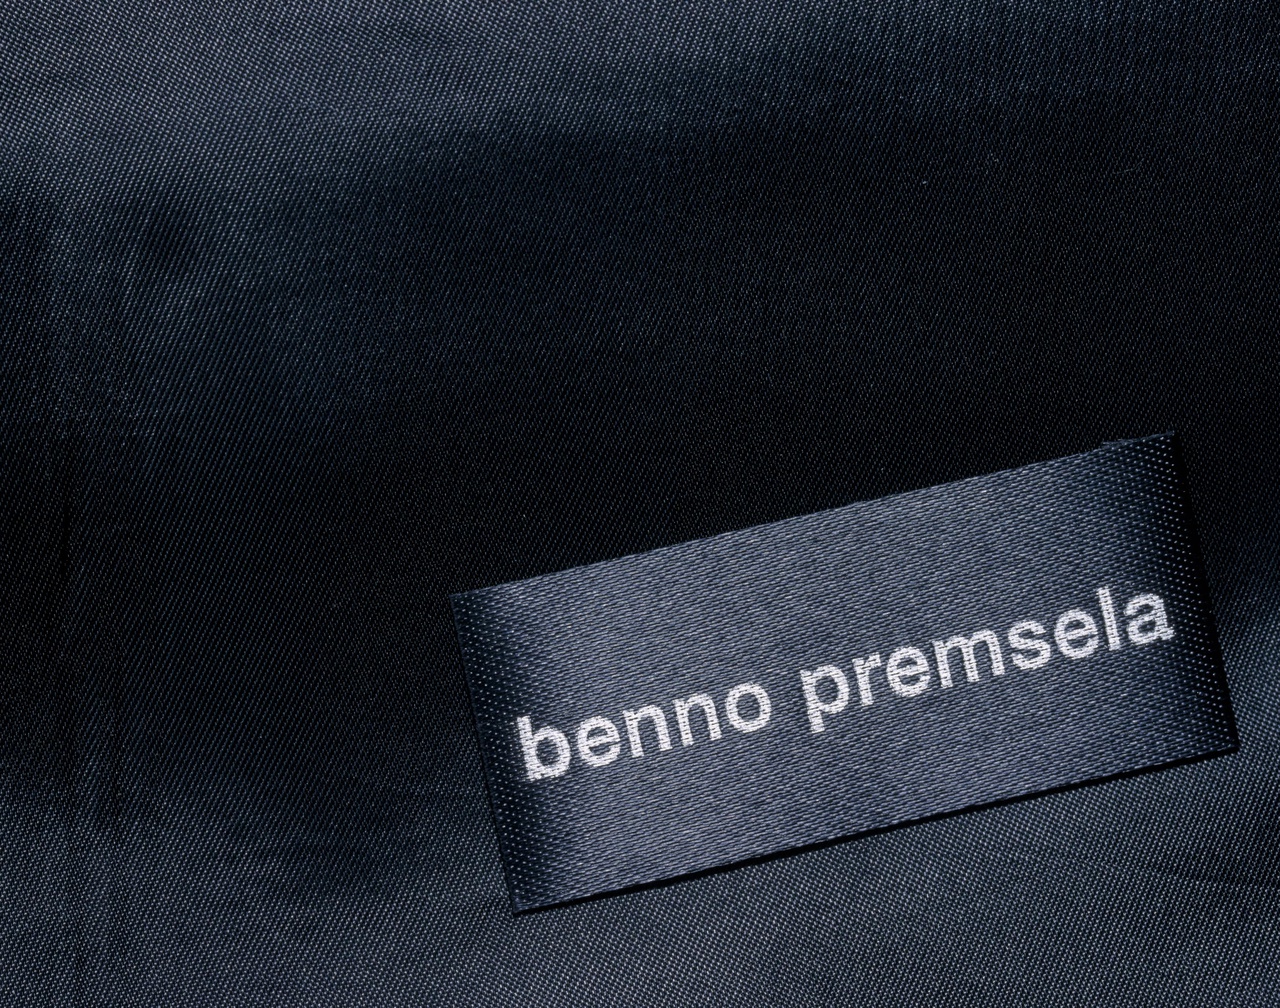 Label 'Benno Premsela'